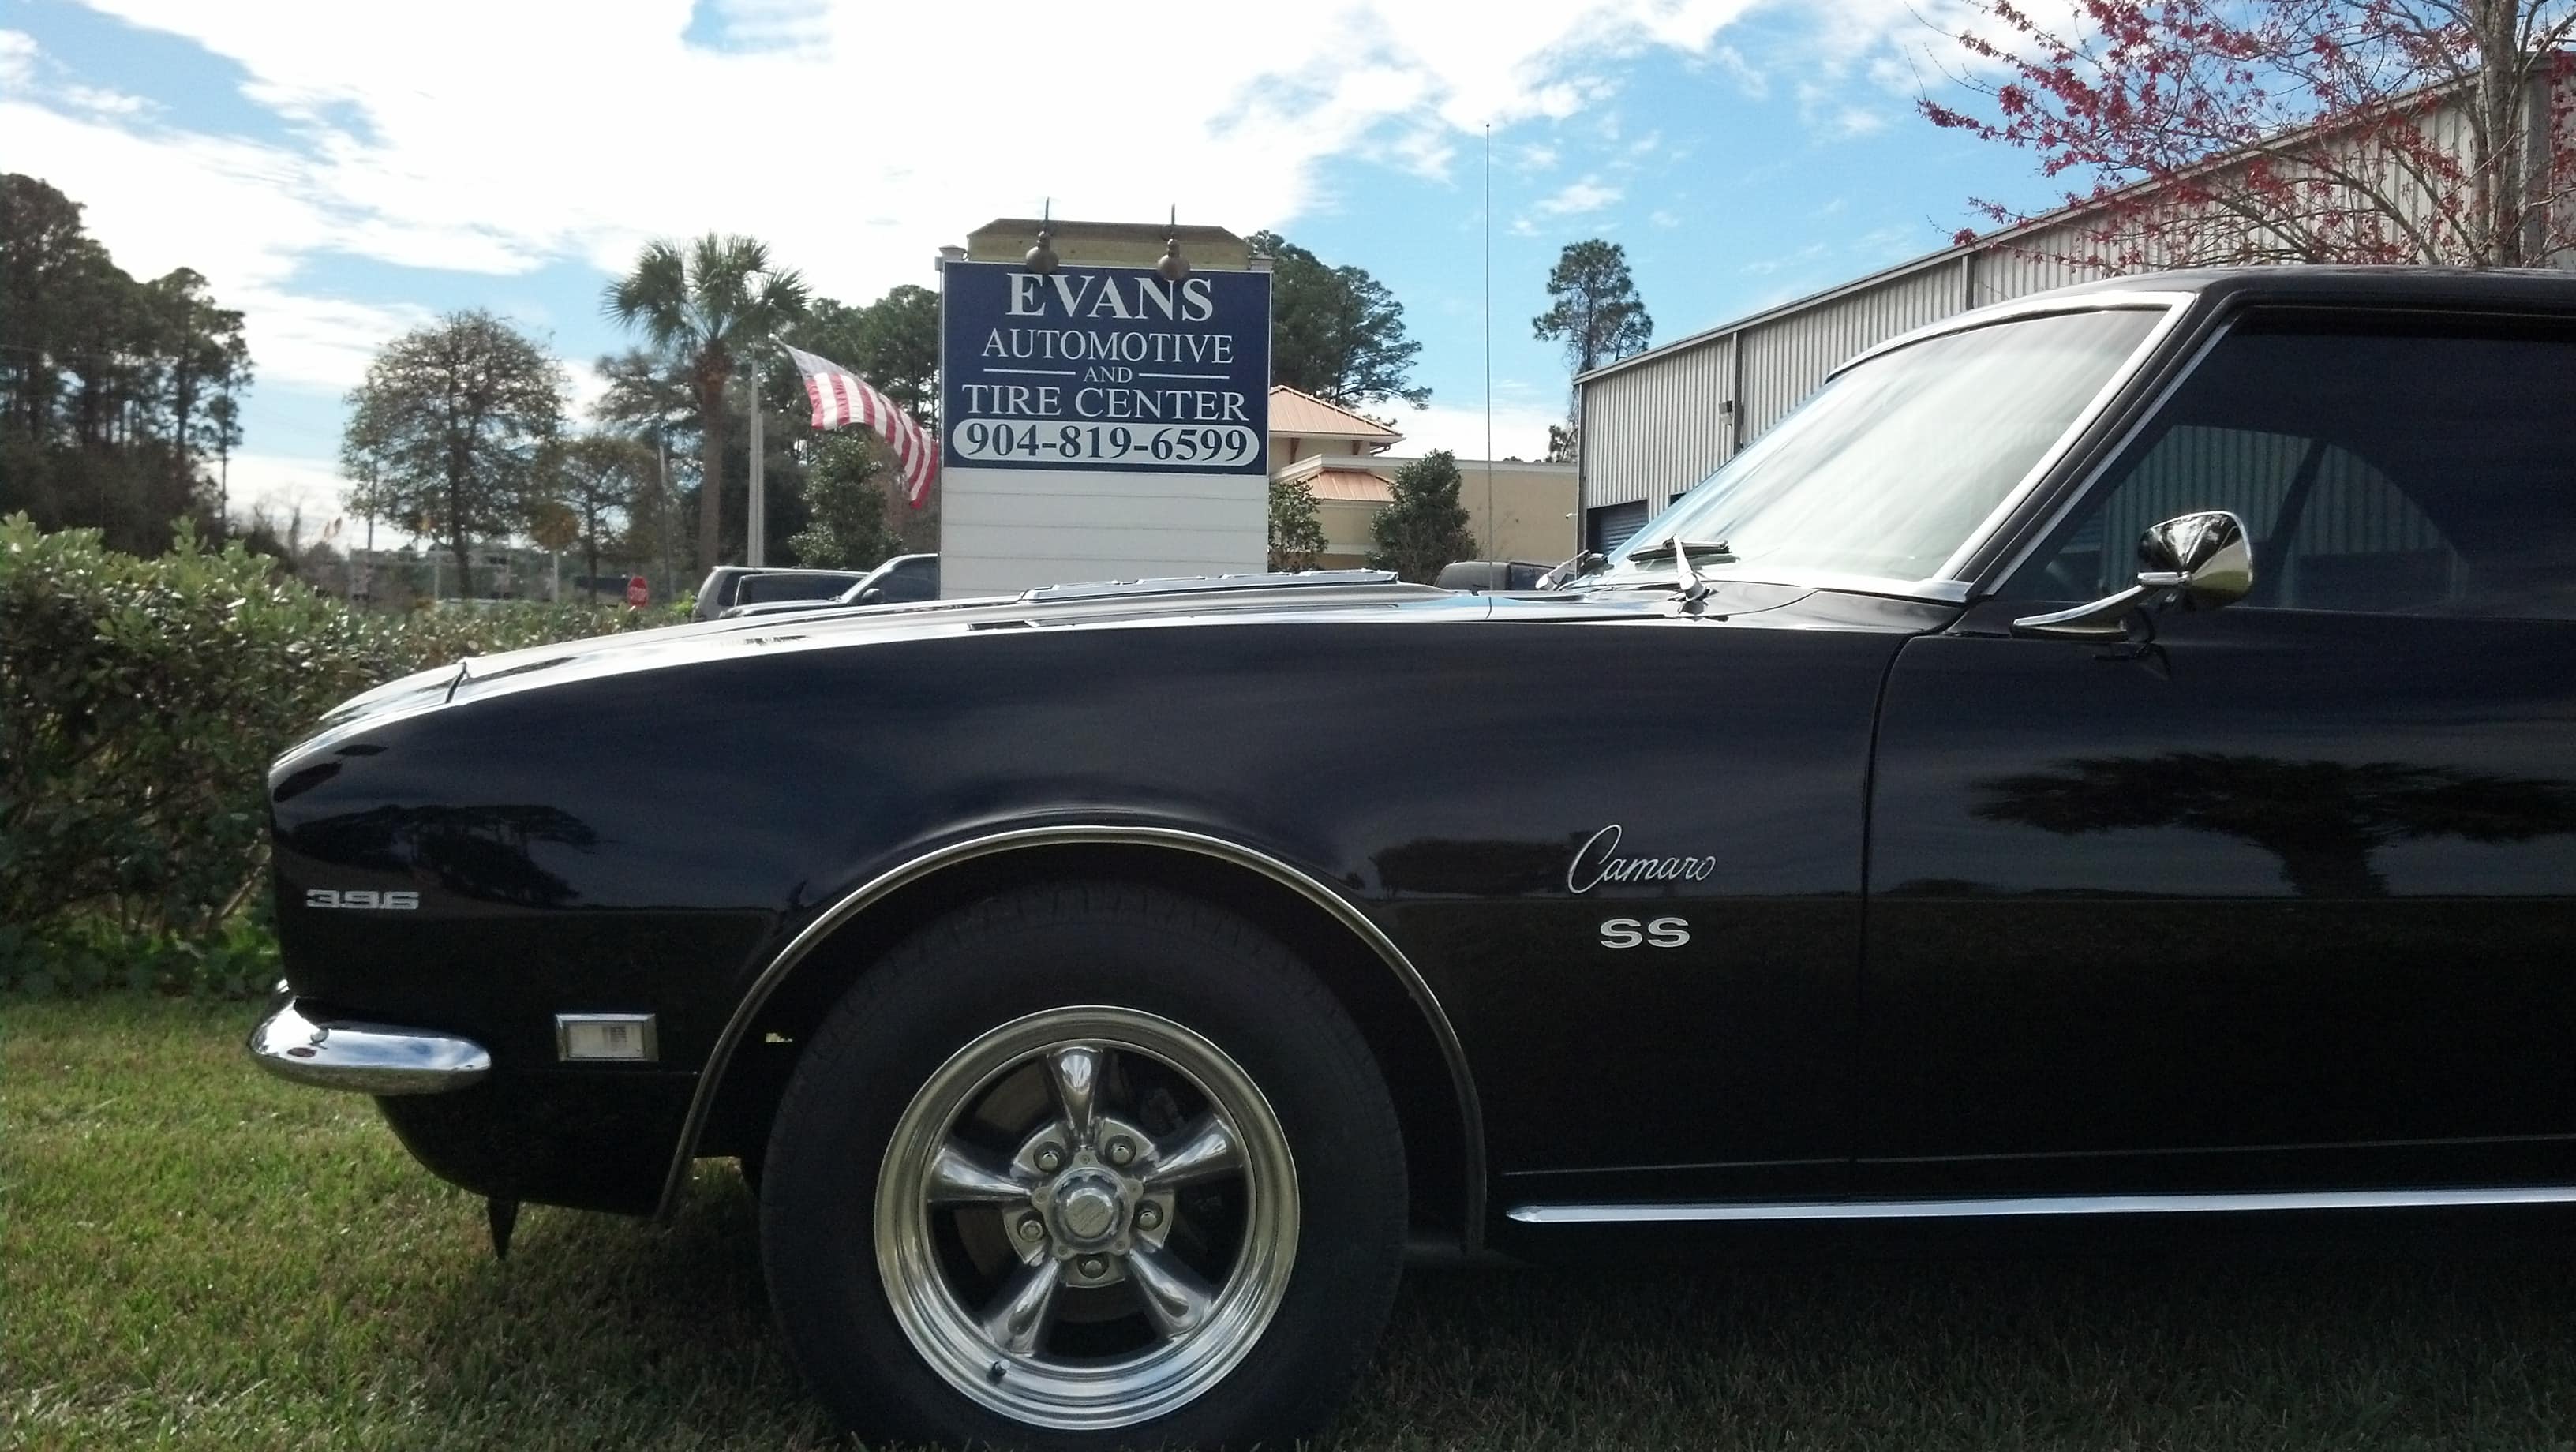 Evans Automotive & Tire Center - St. Augustine, FL, US, car mechanic near me